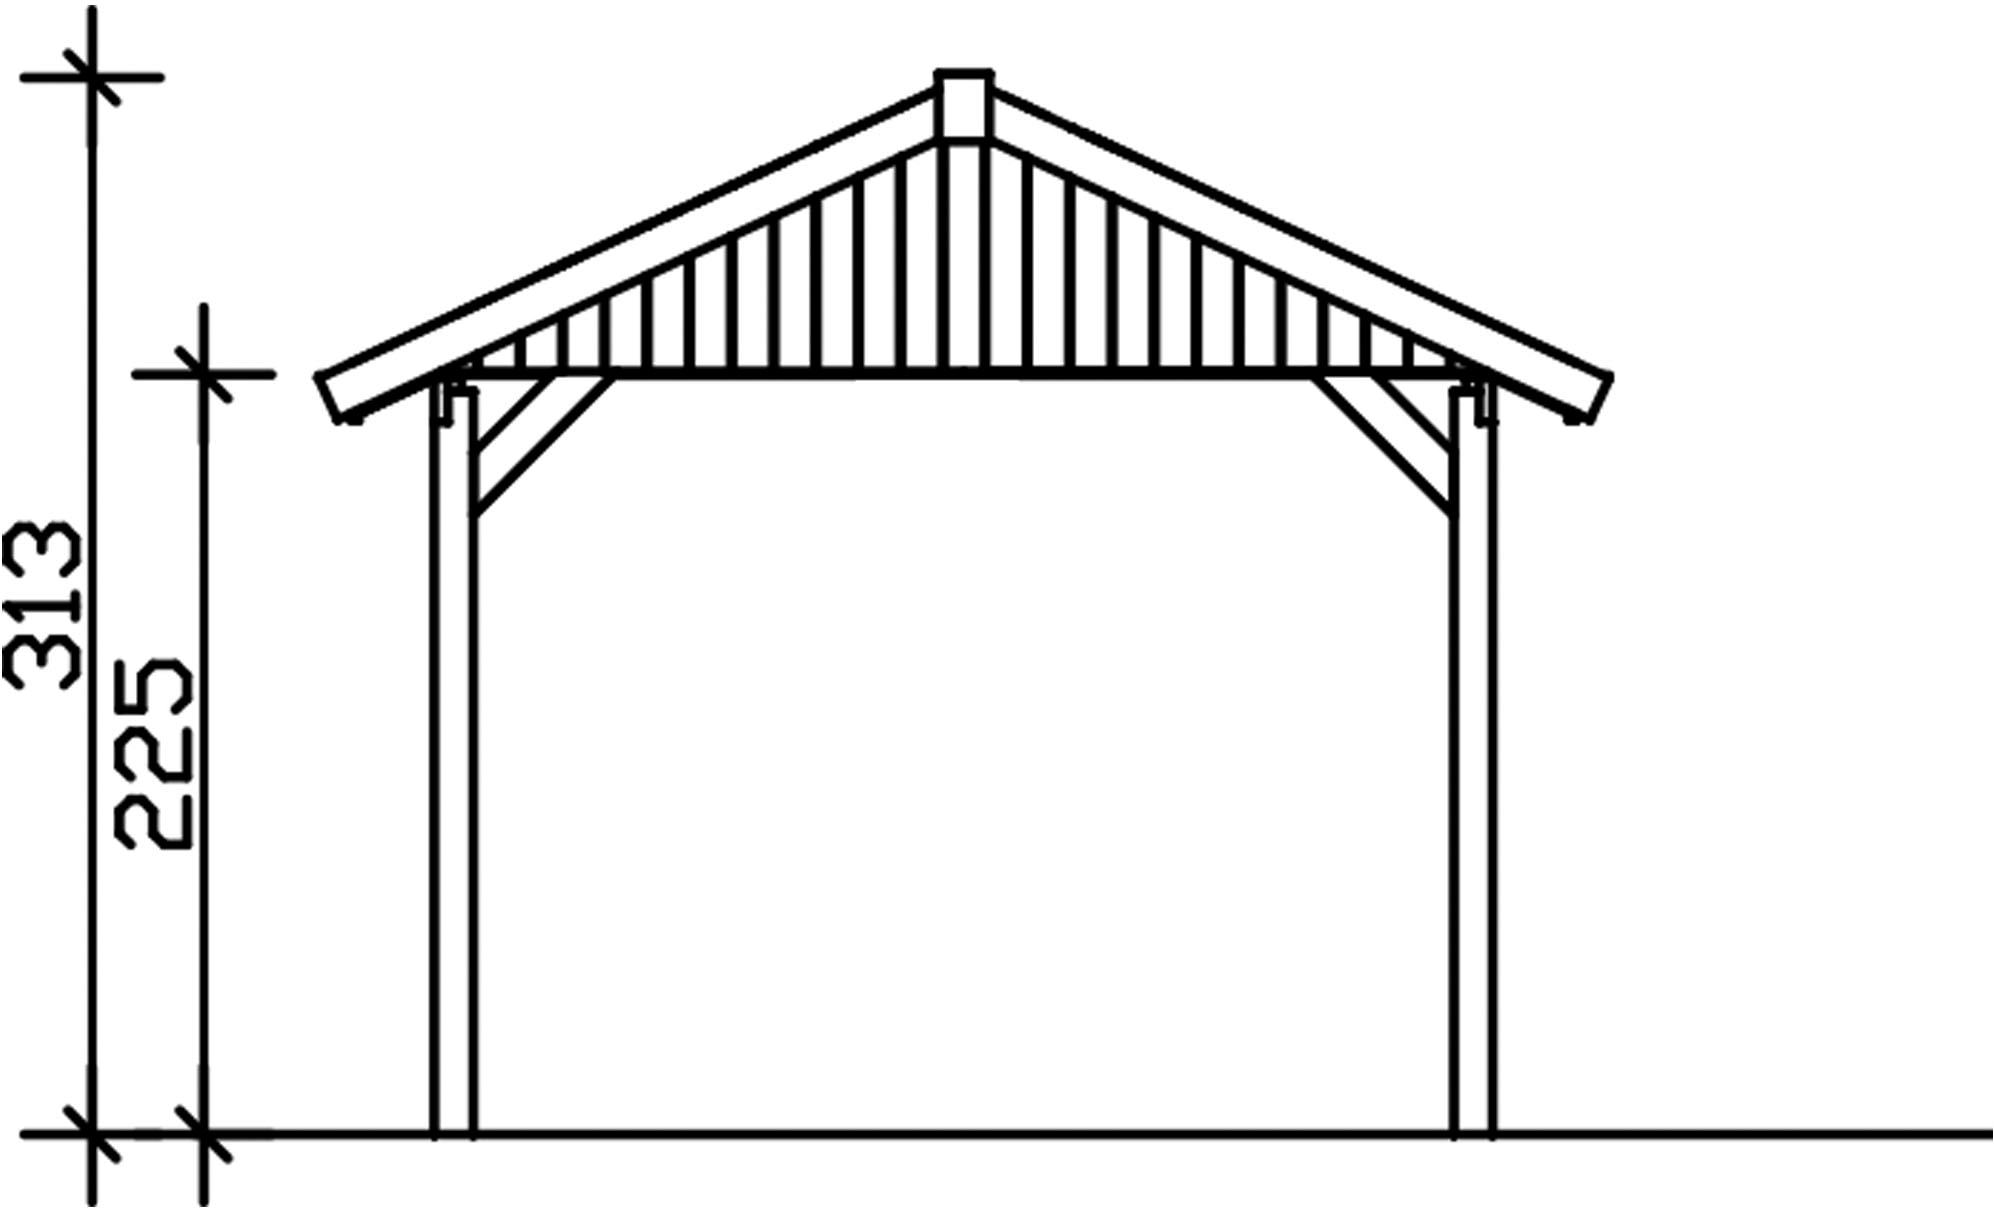 Skanholz Einzelcarport »Wallgau«, Nadelholz, 291 cm, Schiefergrau, 380x600cm, mit Dachlattung